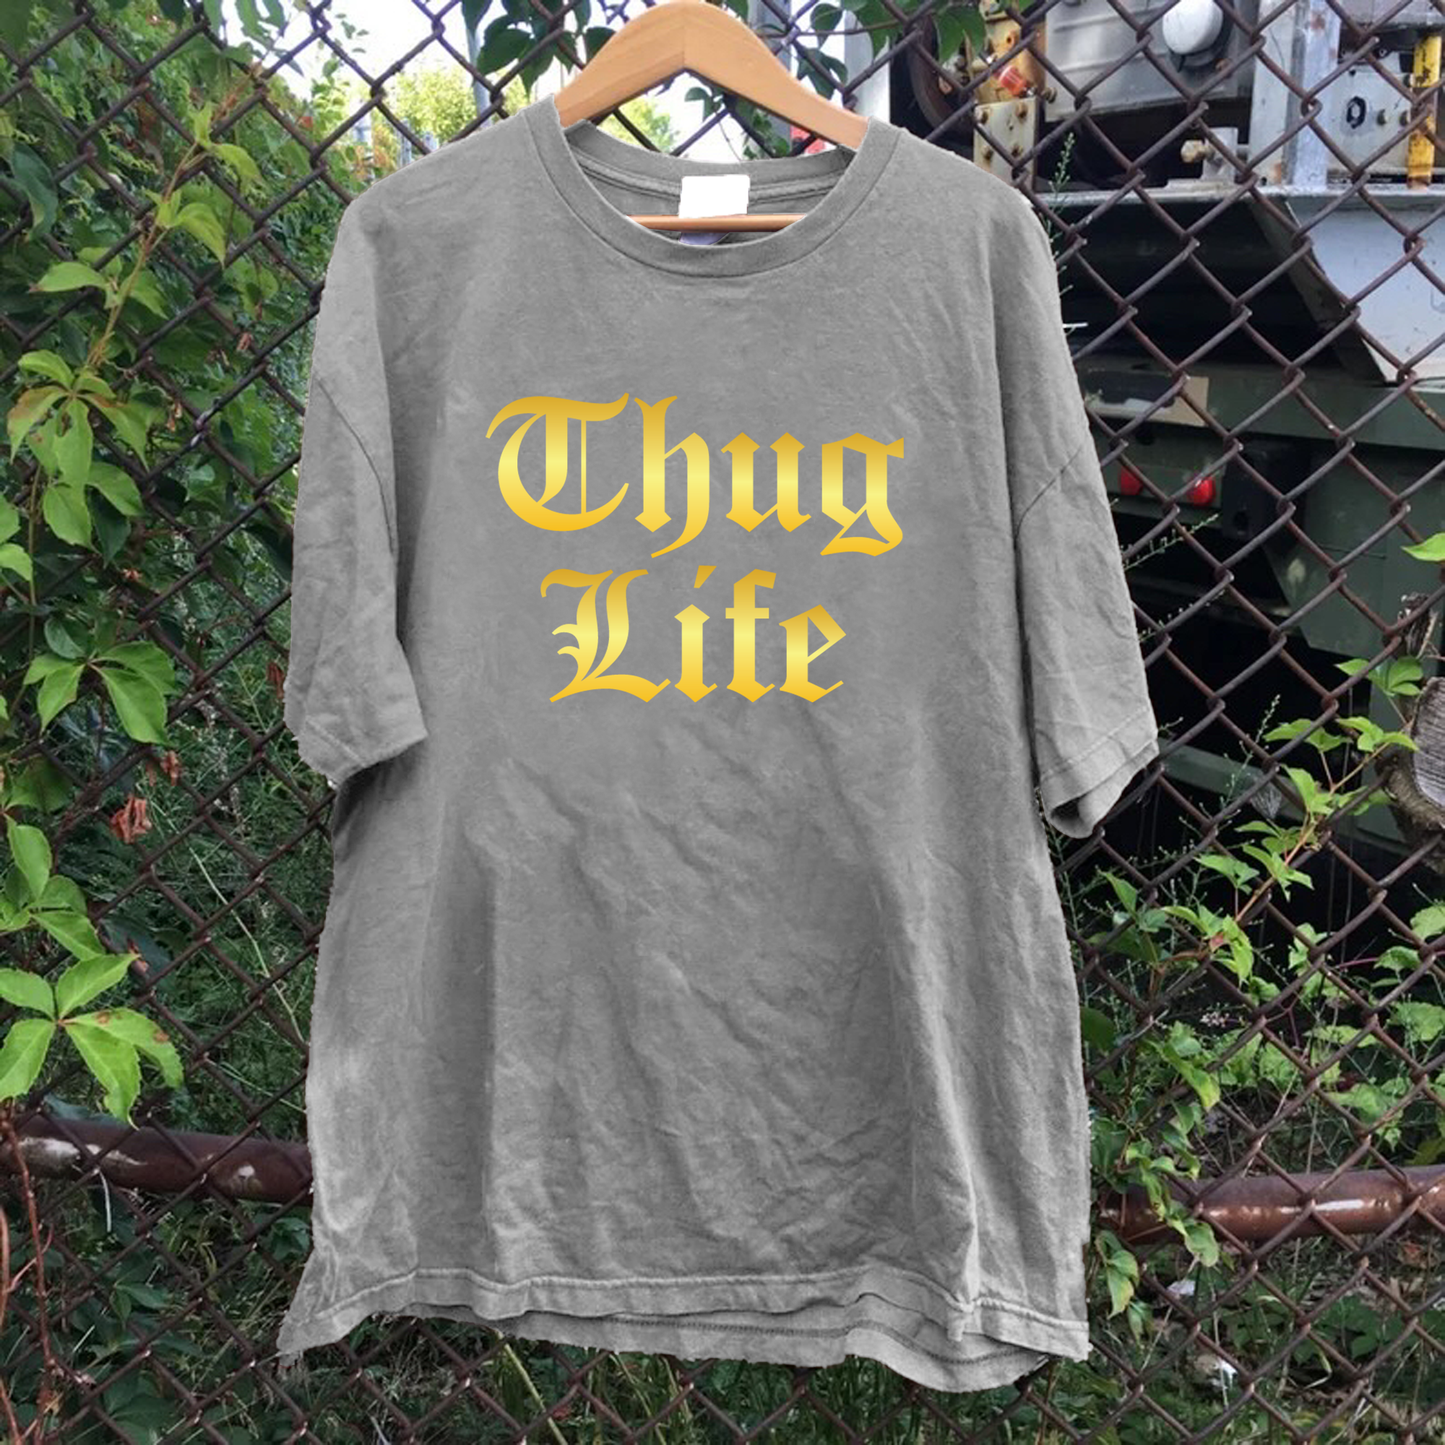 Thug Life Tee